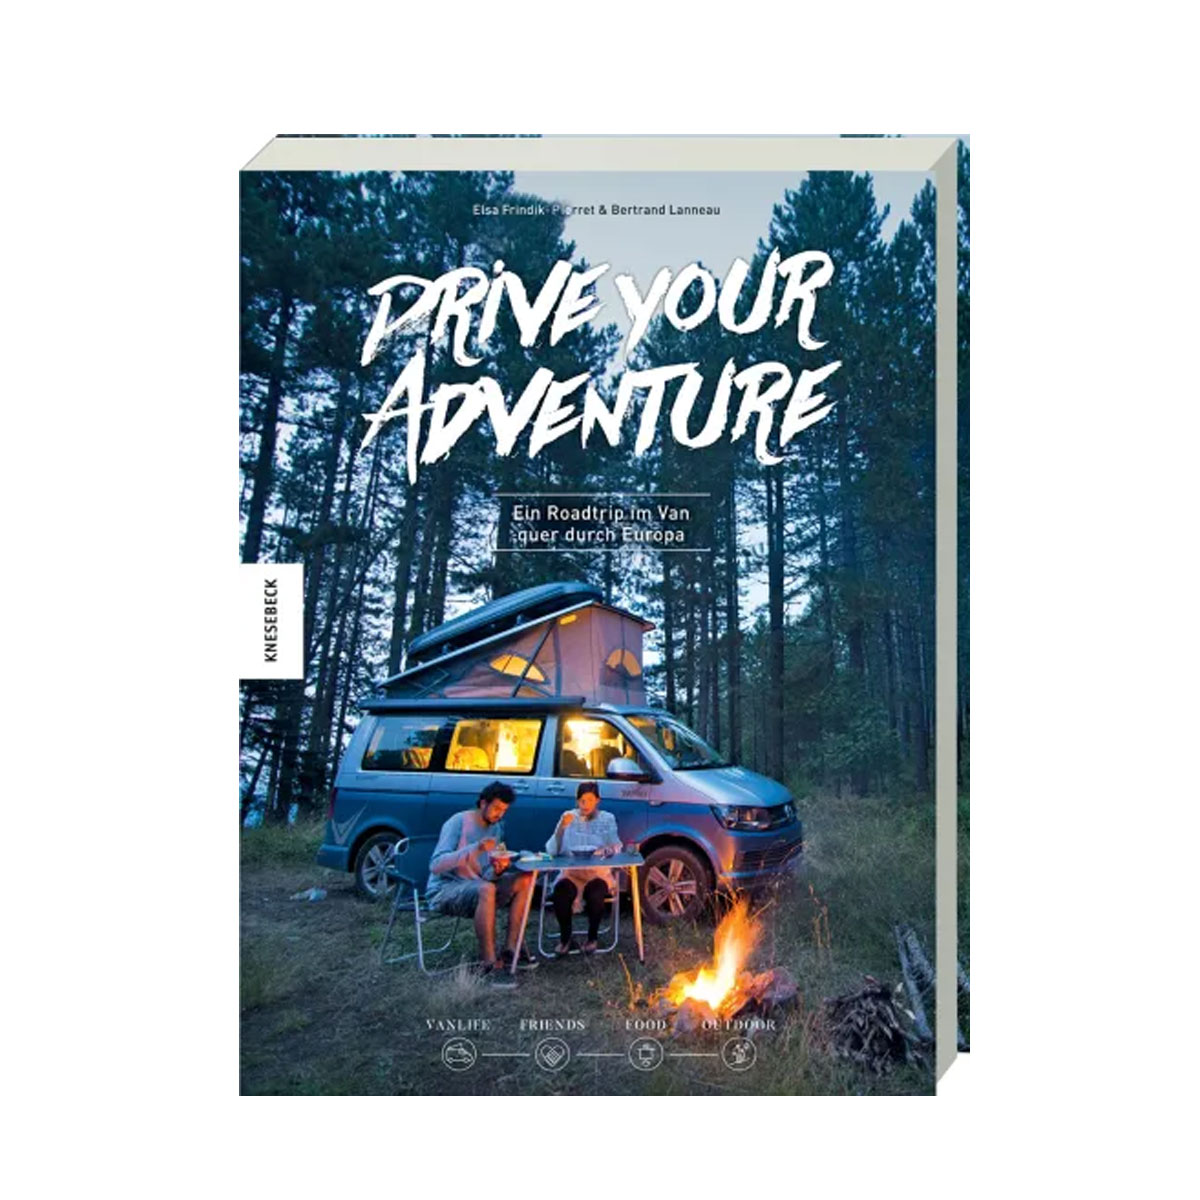 Drive your Adventure - Ein Buch über einen spannenden Roadtrip quer durch Europa im Van - erschienen im Knesebeck Verlag